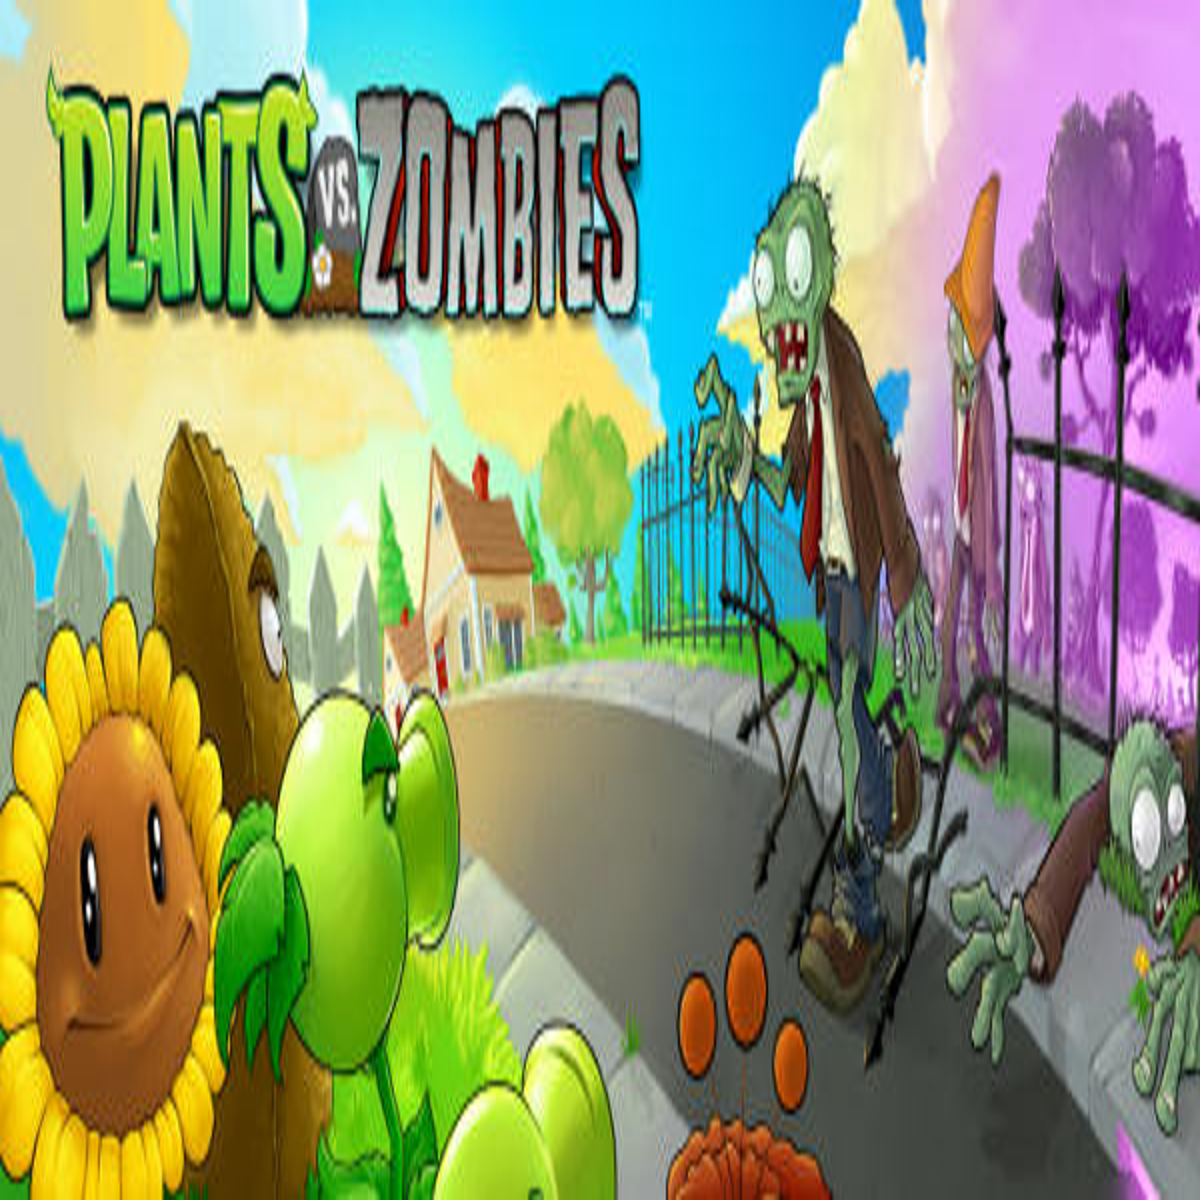 Steam Workshop::Plants vs. Zombies Soundtrack